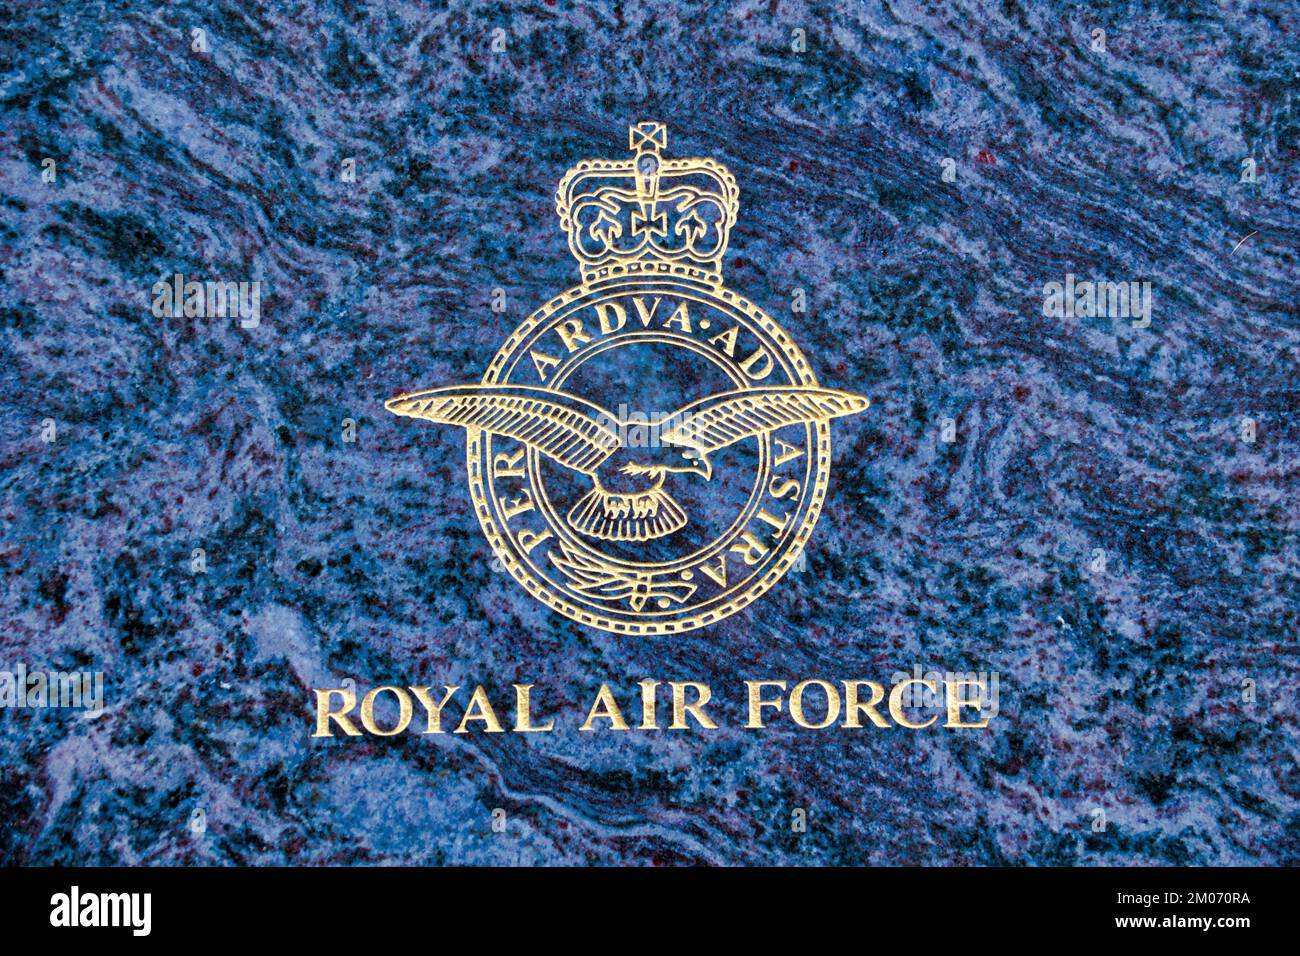 war memorial logo royal air force Stock Photo